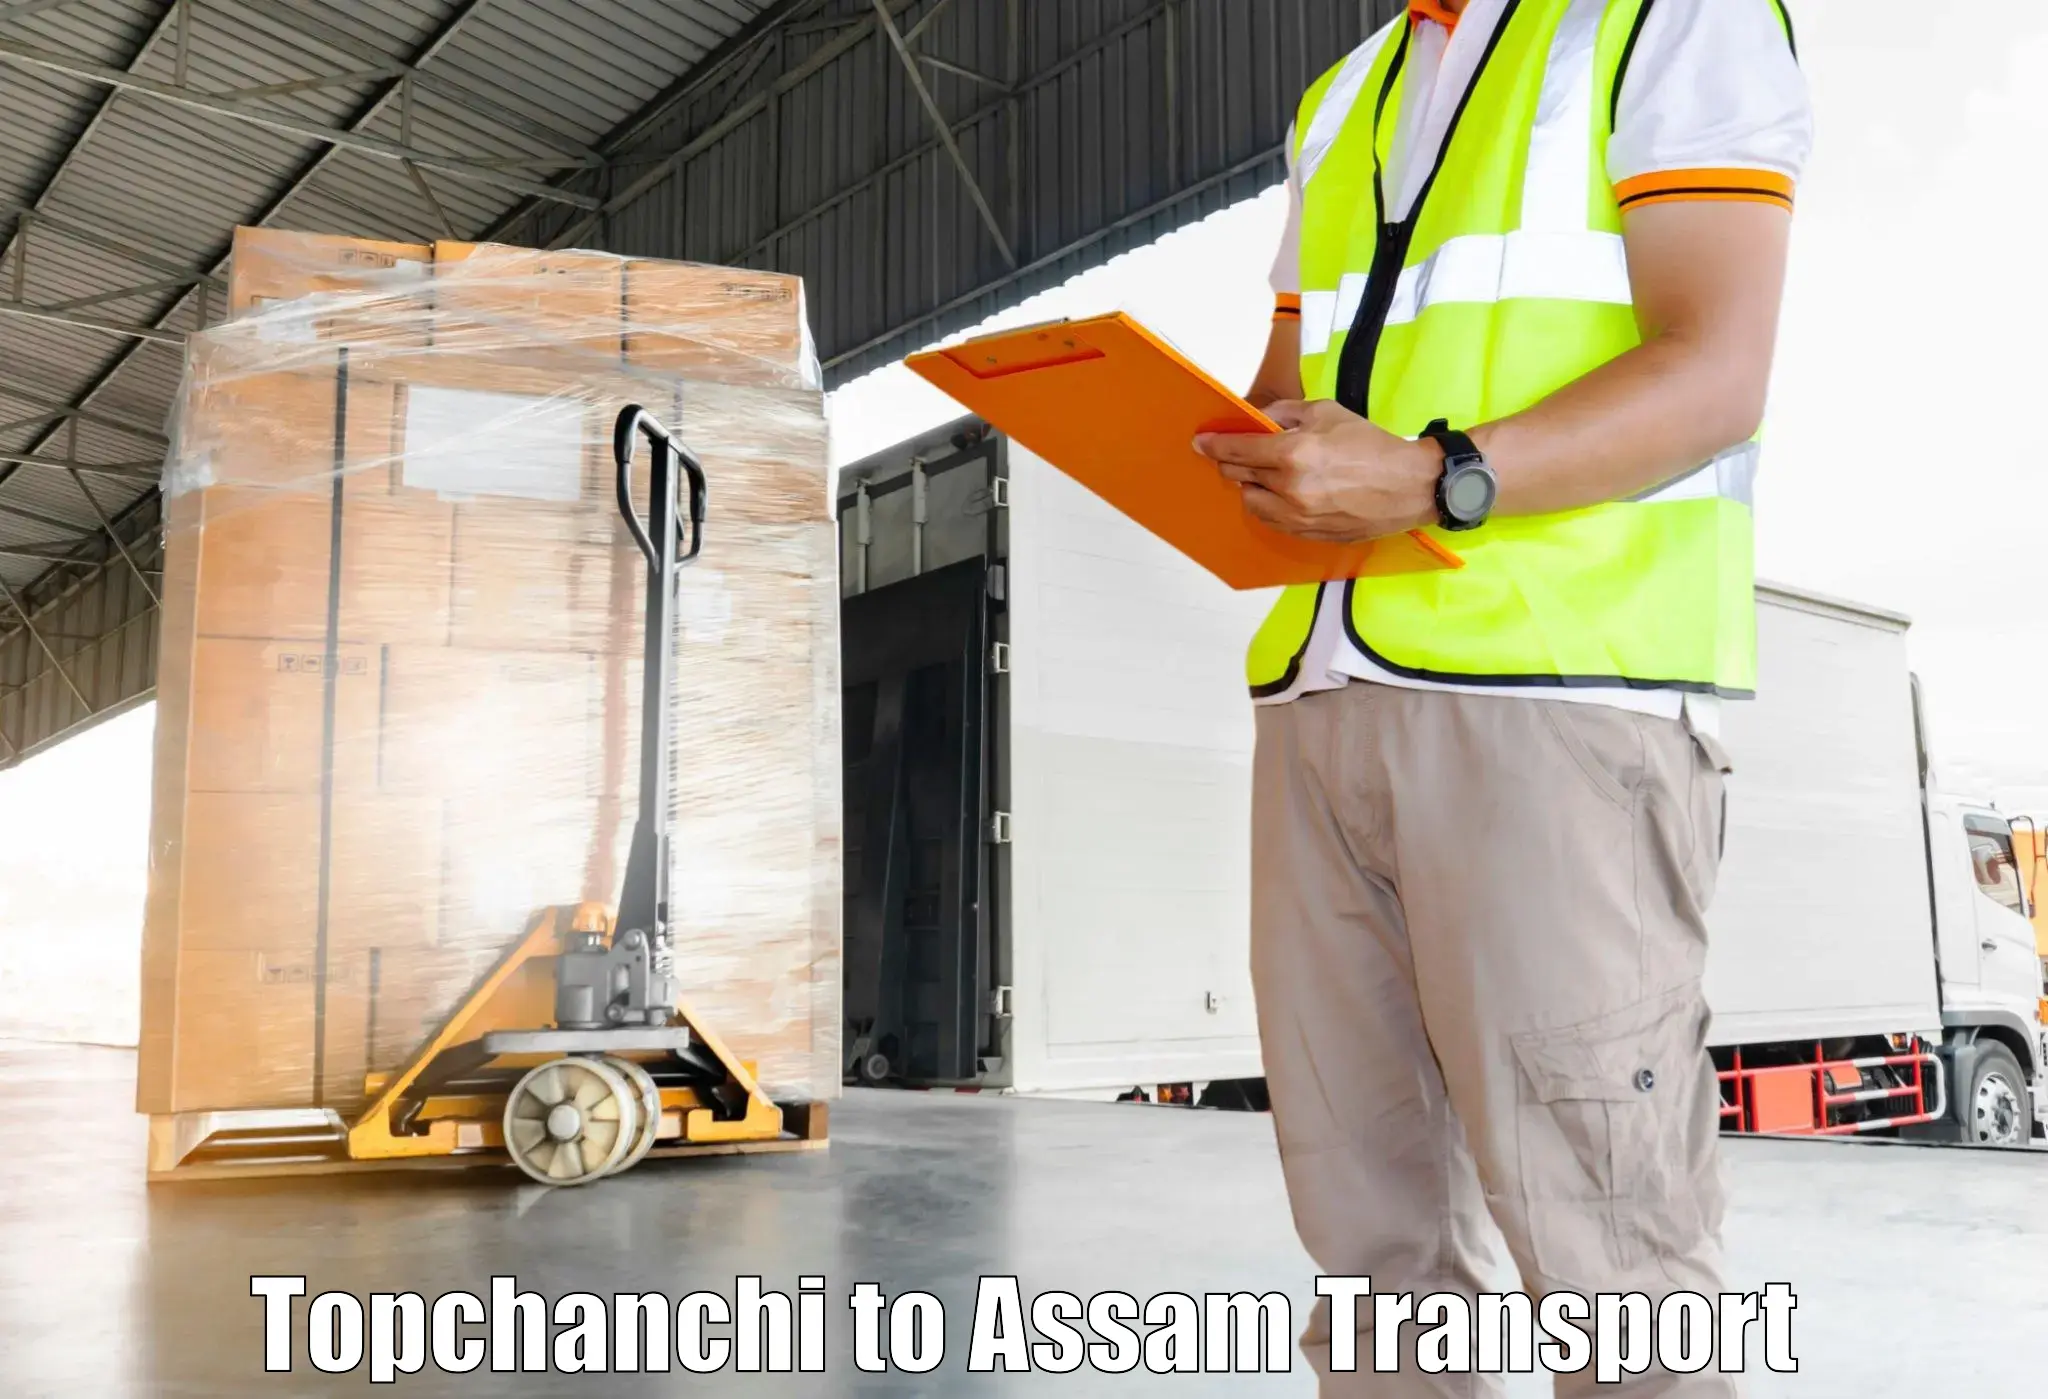 Cargo transport services Topchanchi to Kalgachia